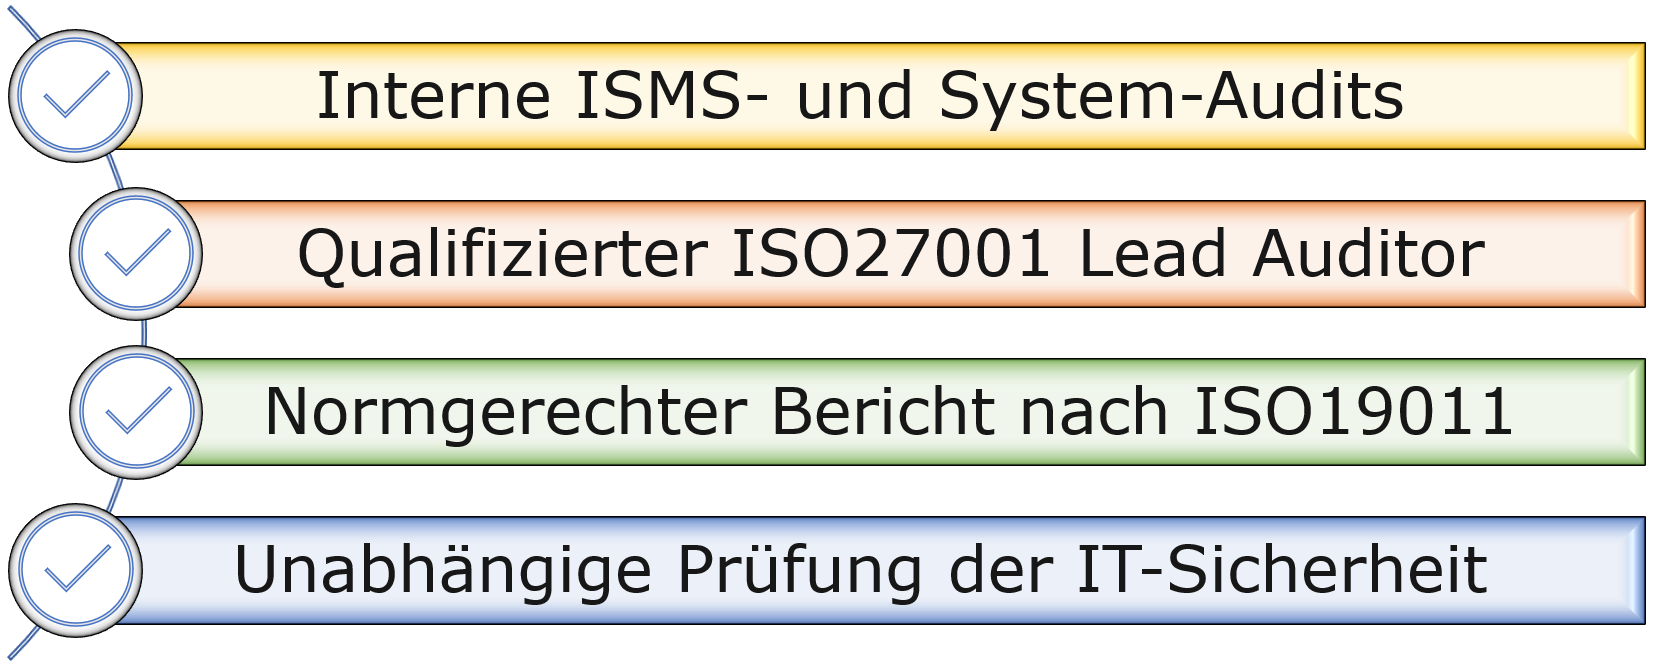 Bild: Checkliste - Interne ISMS- und System-Audits / Qualifizierter ISO27001 Lead Auditor / Normgerechter Bericht nach ISO19011 / Unabhängige Prüfung der IT-Sicherheit